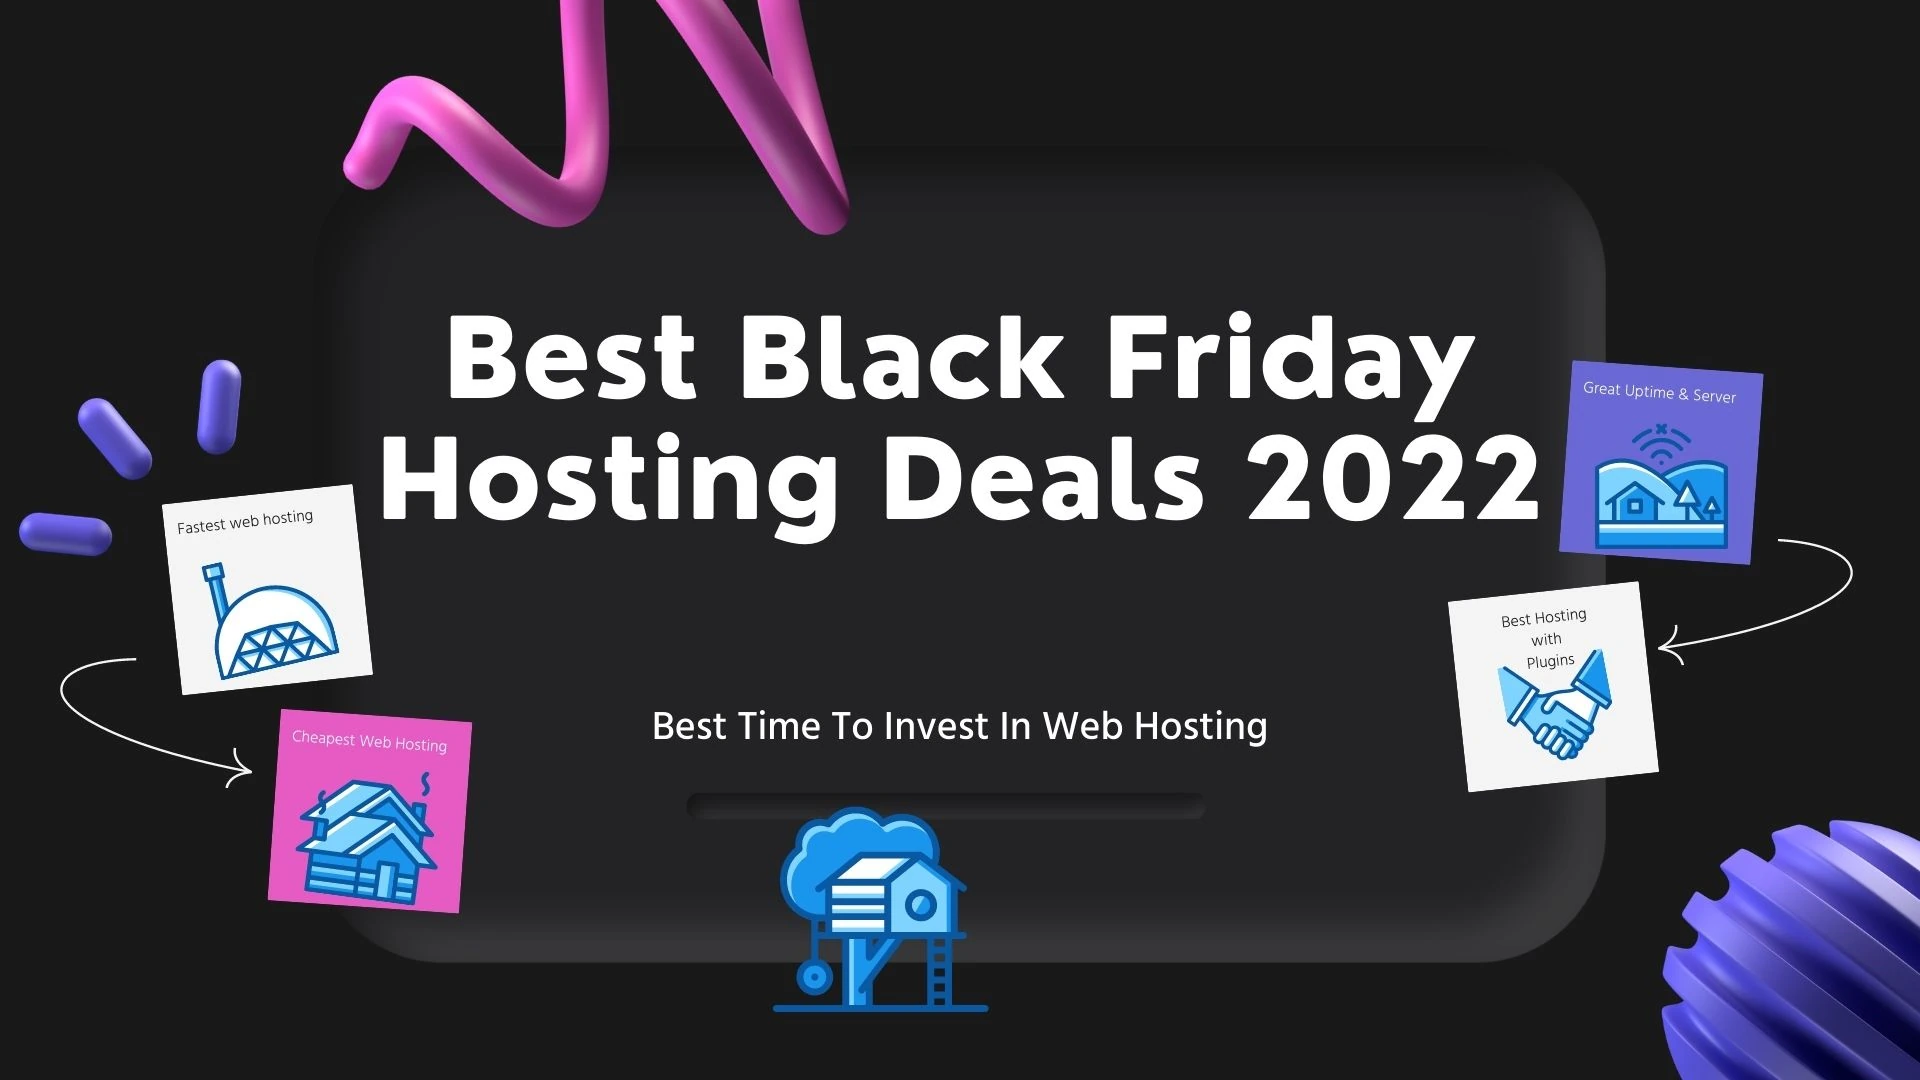 Best Black Friday Web Hosting Deals for 2022